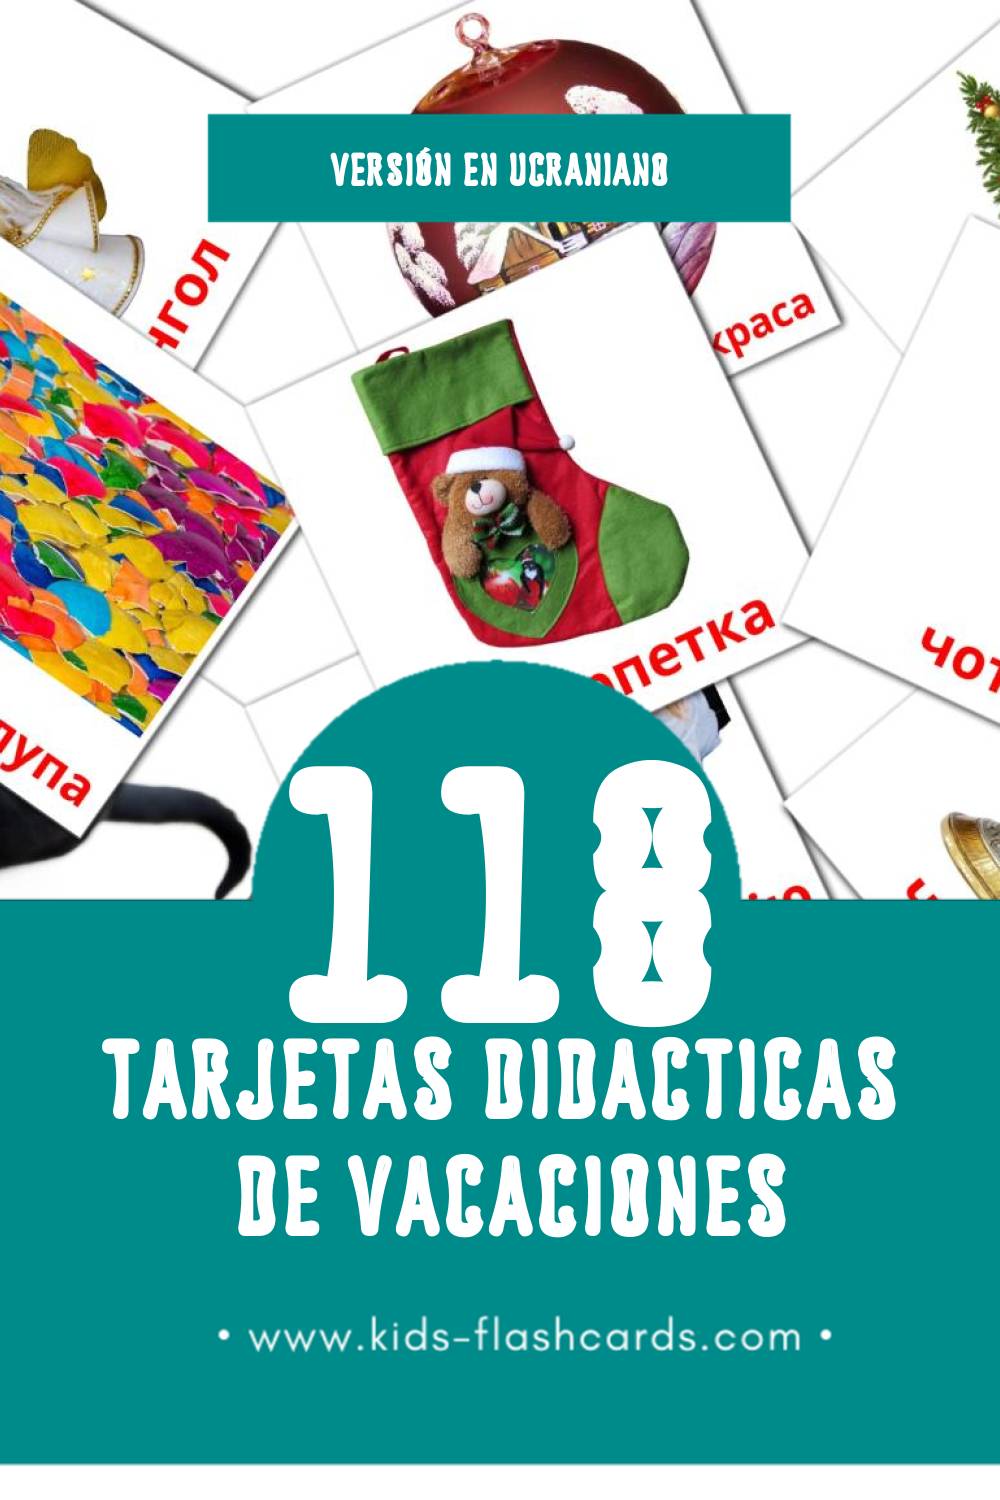 Tarjetas visuales de Свята para niños pequeños (118 tarjetas en Ucraniano)